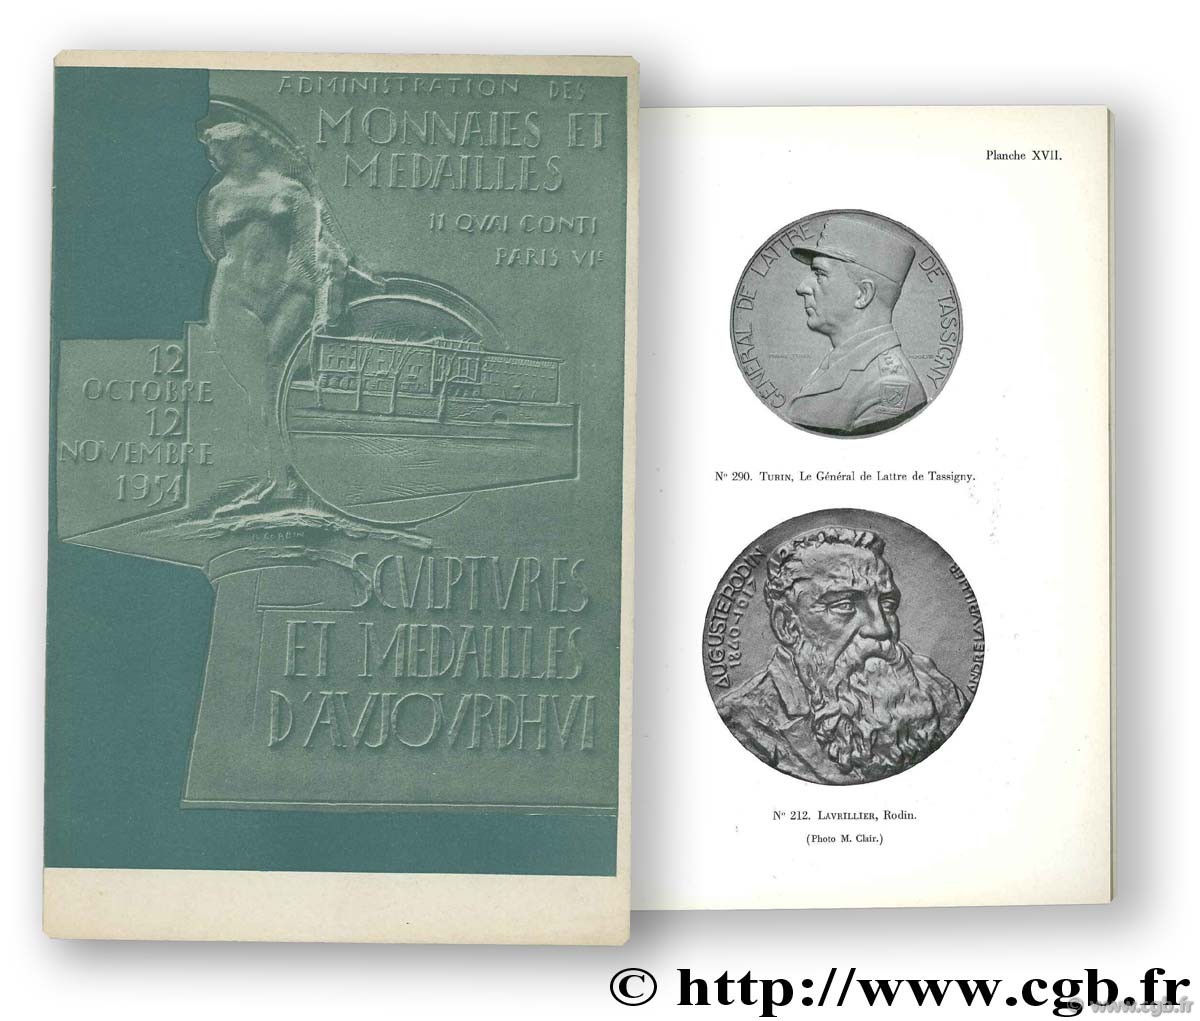 Sculptures et médailles d aujourd hui. Exposition au musée monétaire, 12 octobre - 12 novembre 1954 